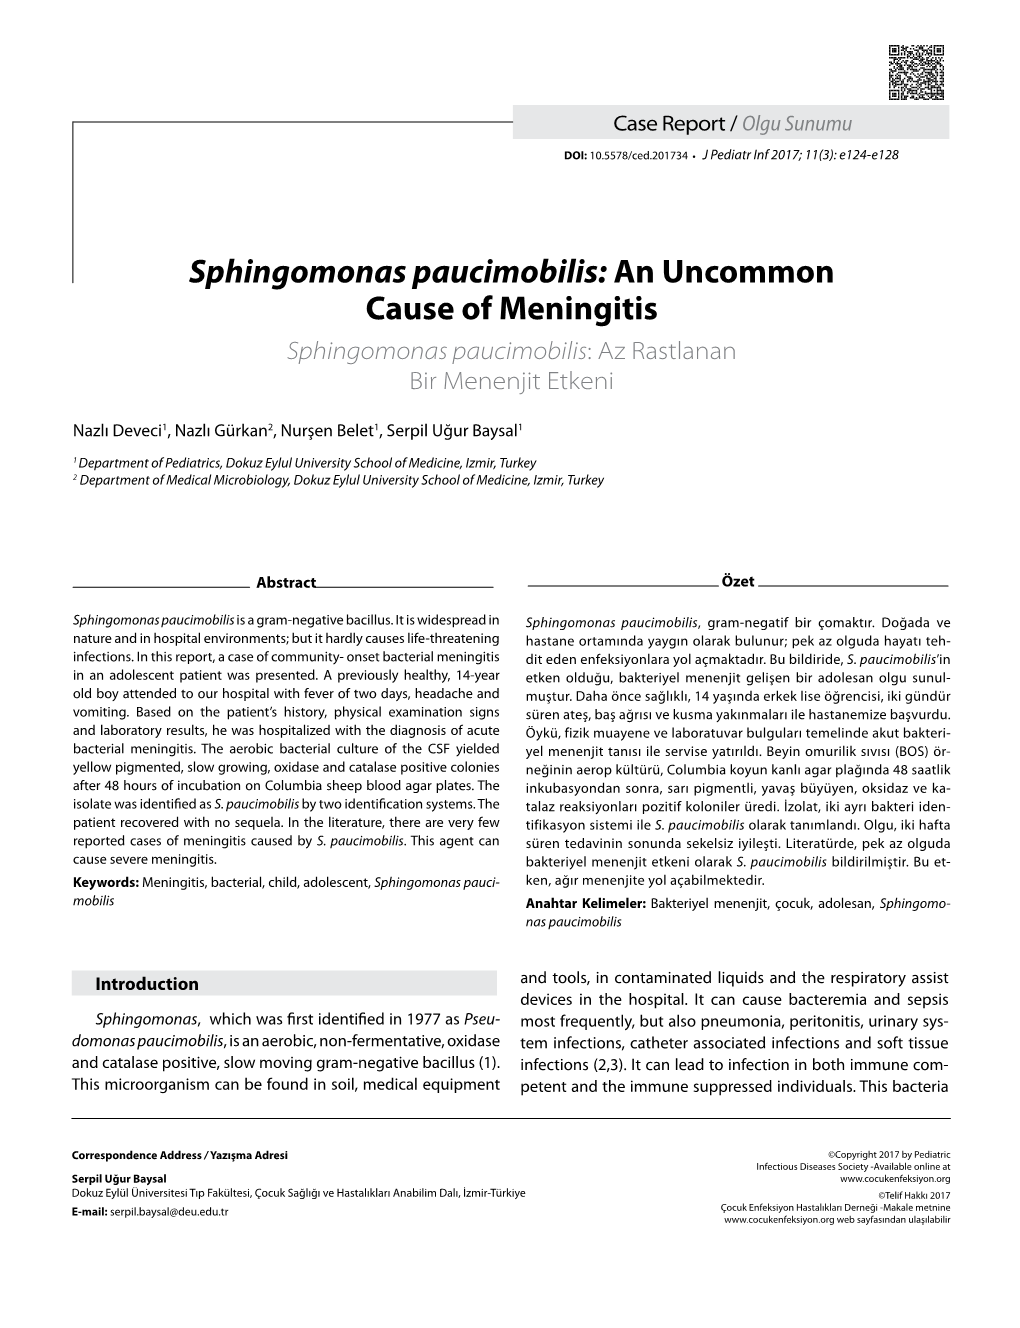 Sphingomonas Paucimobilis: an Uncommon Cause of Meningitis Sphingomonas Paucimobilis: Az Rastlanan Bir Menenjit Etkeni